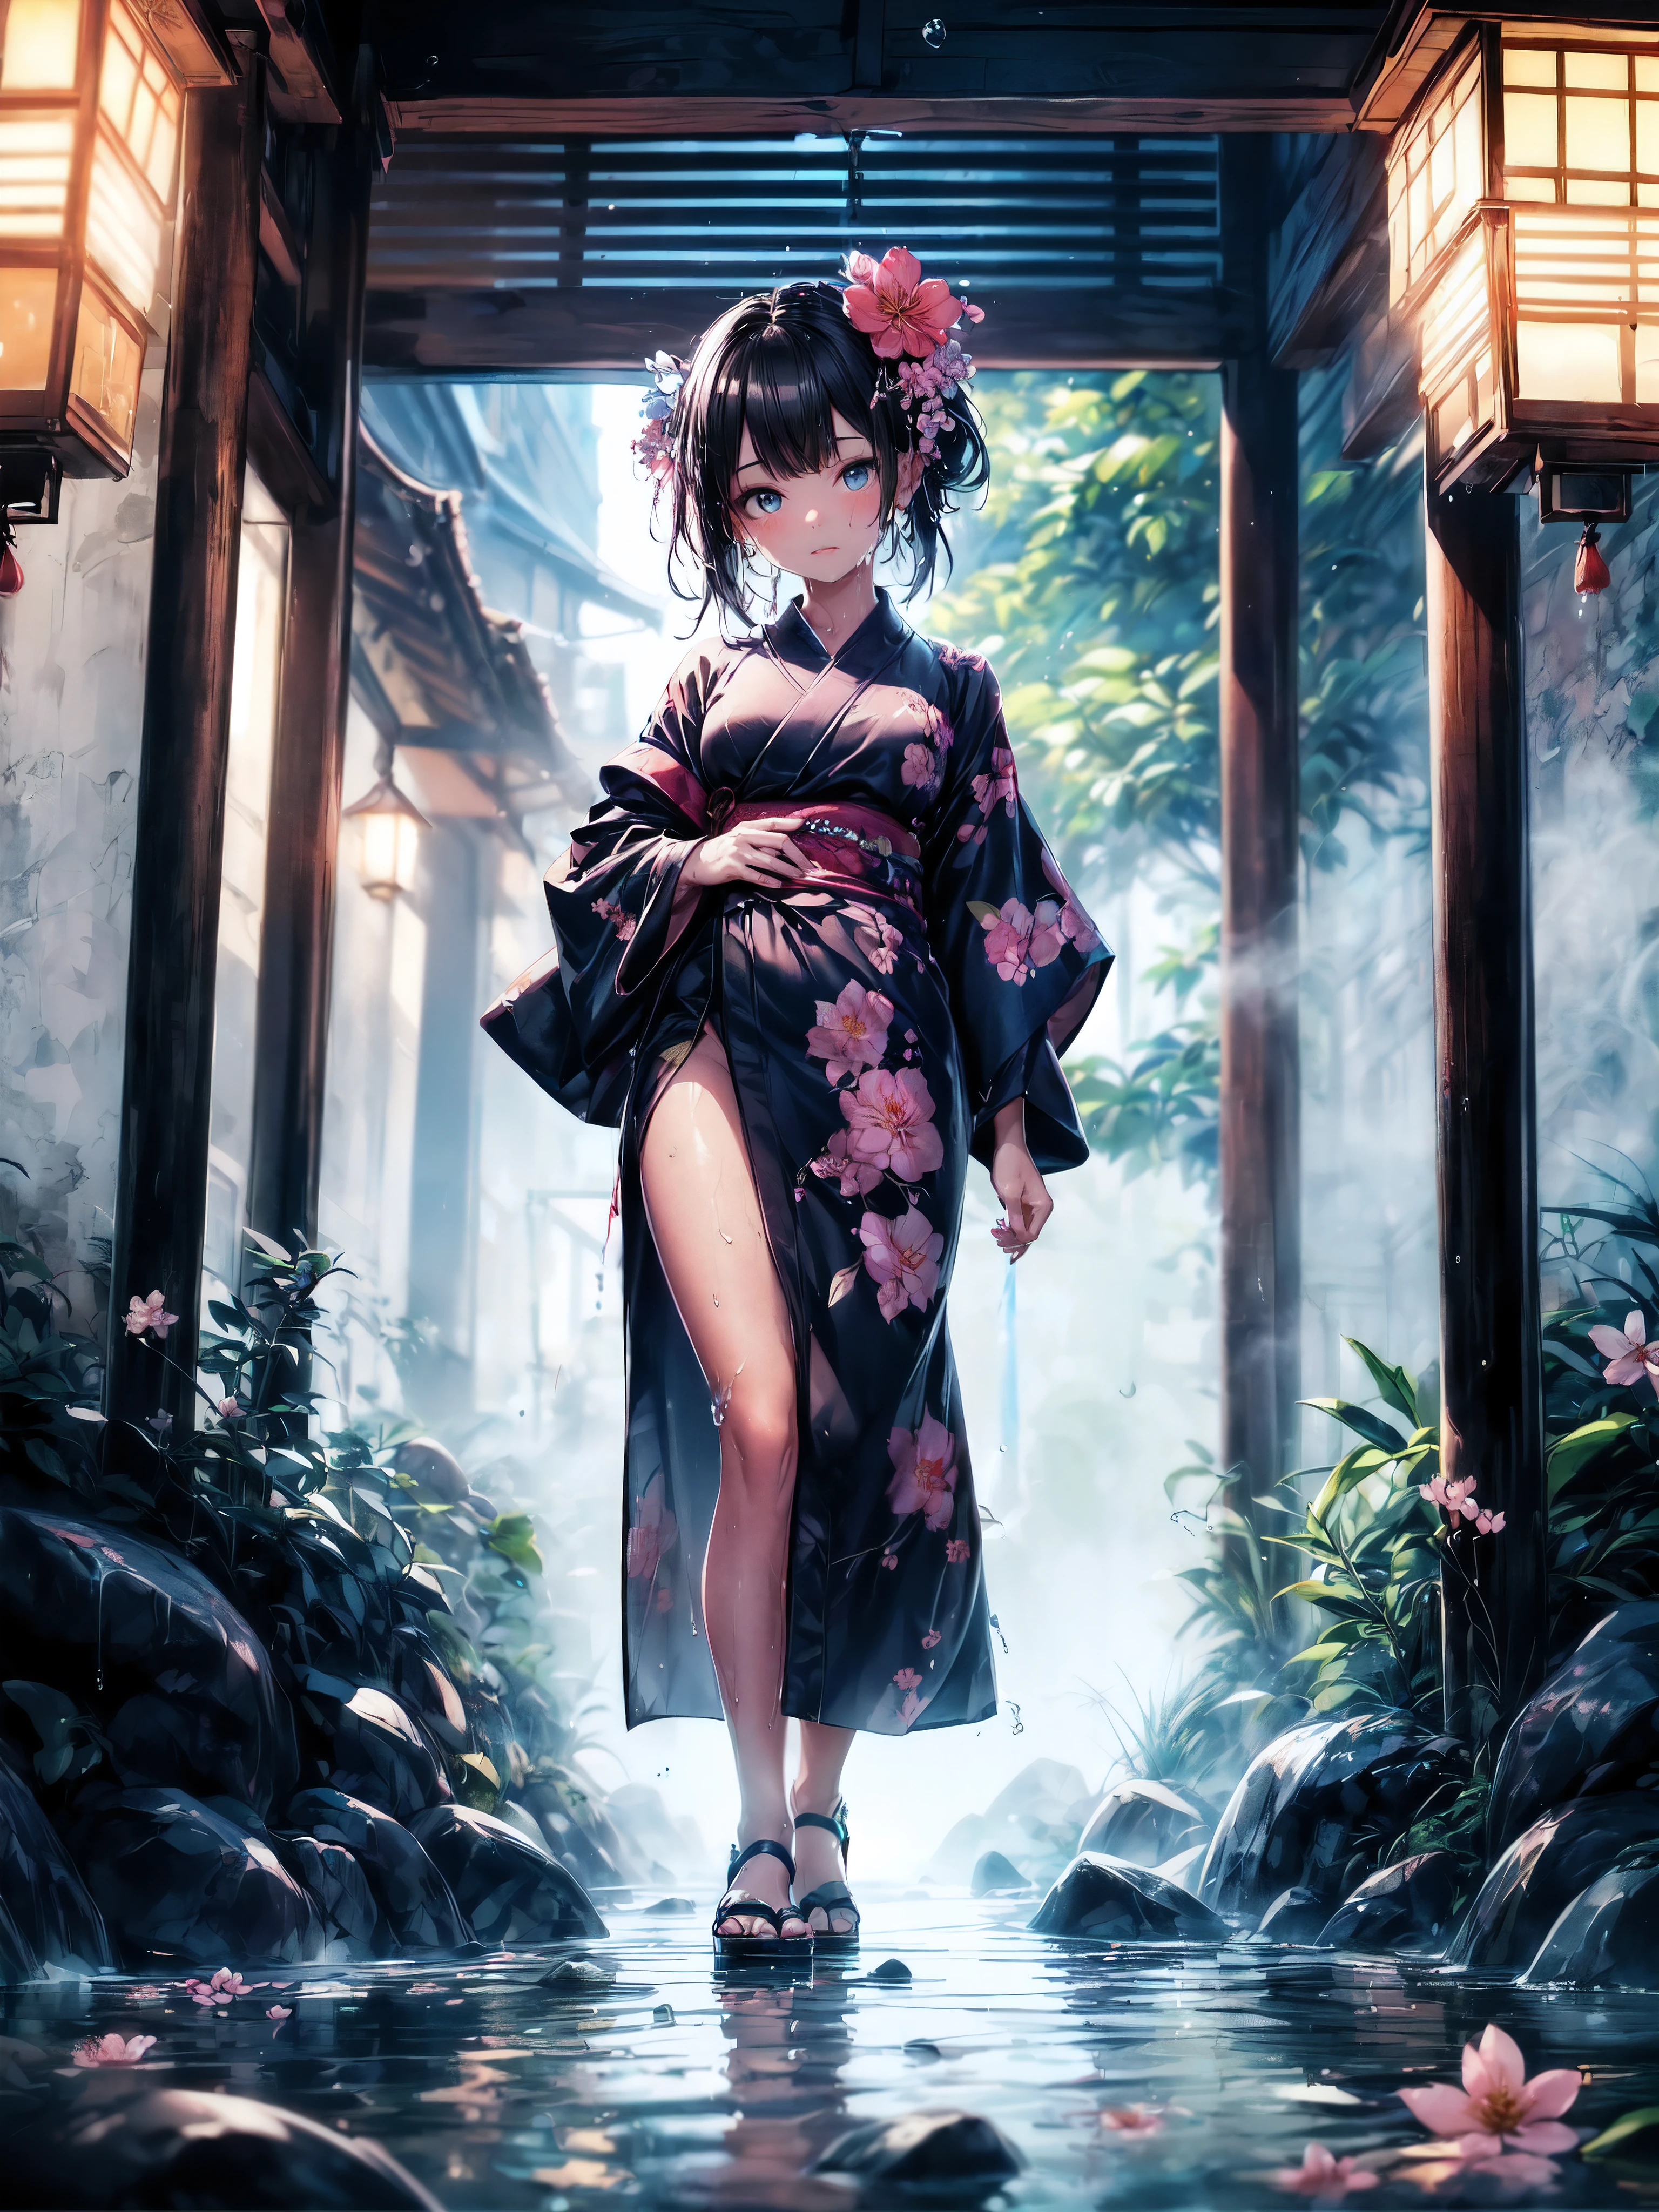 (tout le corps), (Une fillette de 7 ans:1.2), (Très jeune petite fille), changement, (seulement), (petite poitrine), (grand angle), photo brute, Esthétique, Convoluté, Récompensé, clair-obscur, Meilleure qualité, contexte détaillé, (atmosphère brumeuse:1.2), (dure journée de pluie:1.1),((Fille en kimono de coton noir:1.2)), grand kimono en coton noir, grand kimono noir avec une texture en coton, très longue manche kimono noire, meilleures rides, De vraies rides, Meilleures ombres, (mouillé, mouillé body, mouillé hair, mouillé skin, very mouillé black kimono, reflection on the mouillé kimono, broderie délicate de fleurs de cerisier, de subtiles gouttelettes d&#39;eau:1.15), (pulvérisateur d&#39;eau:1.1), (Kimono en tissu, meilleure ride de kimono, Enveloppement de mucus transparent), (Parcourez le (Brume sombre Jardin Zen)), (emplacement réel), yeux délicats et beaux, Pose décontractée, Textures détaillées, posant, (corps anatomiquement correct, Visage détaillé, (kimono aux textures très détaillées avec motif floral), (cheveux noirs), cheveux volumineux, ornement de cheveux, Couleurs vives, Expression calme, regarde le spectateur, paysage paisible, sensation de propreté et de fraîcheur, De l’eau belle et détaillée